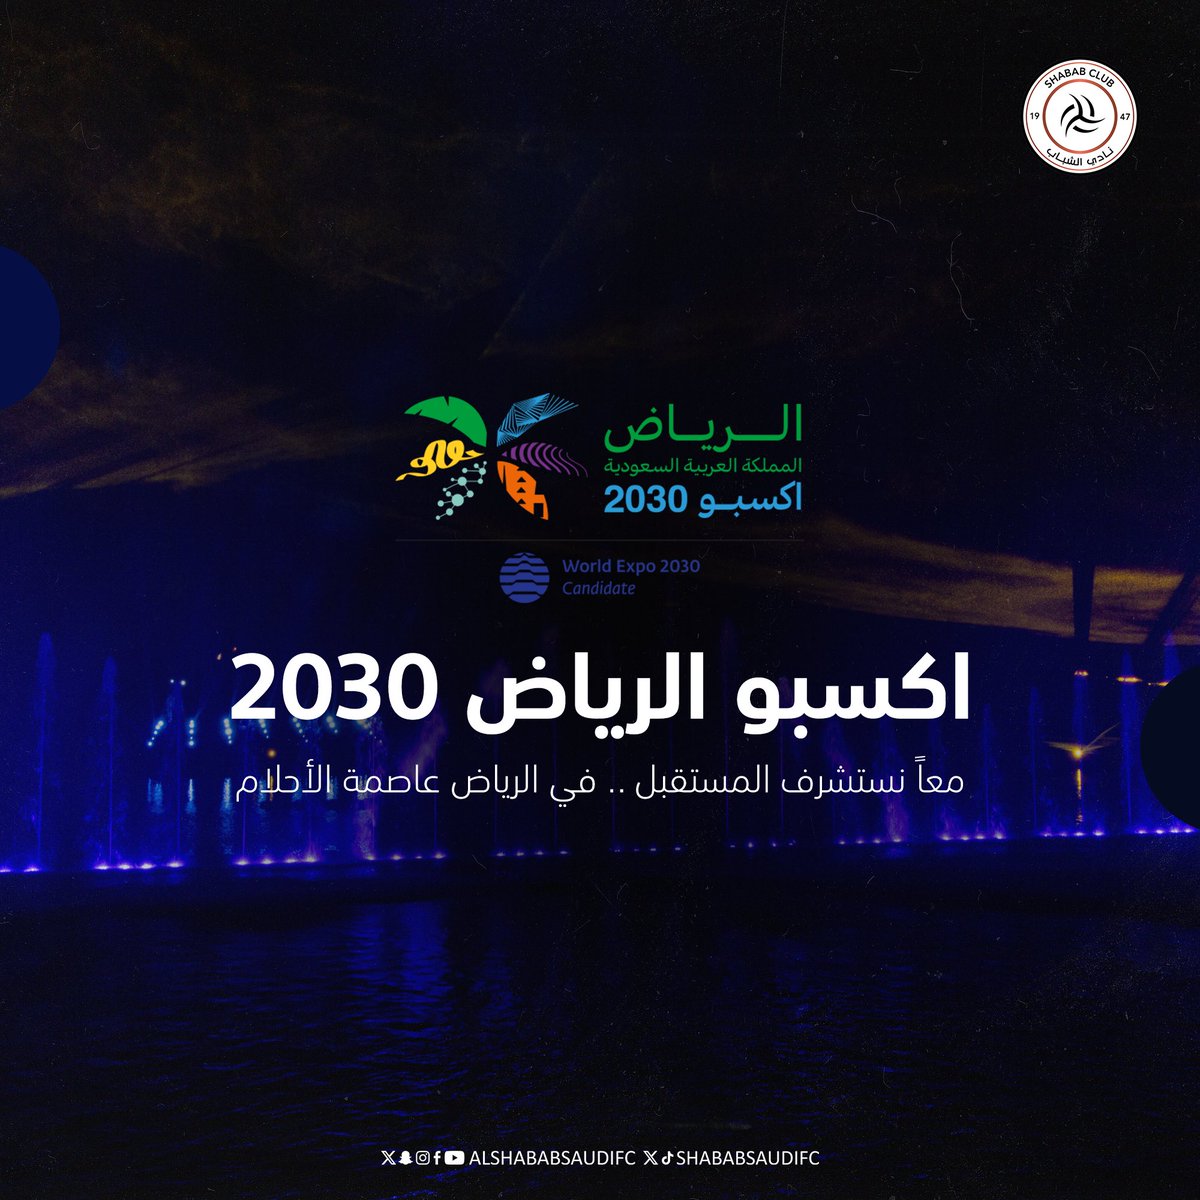 معاً نستشرف المستقبل .. في الرياض عاصمة الأحلام #الرياض_إكسبو2030